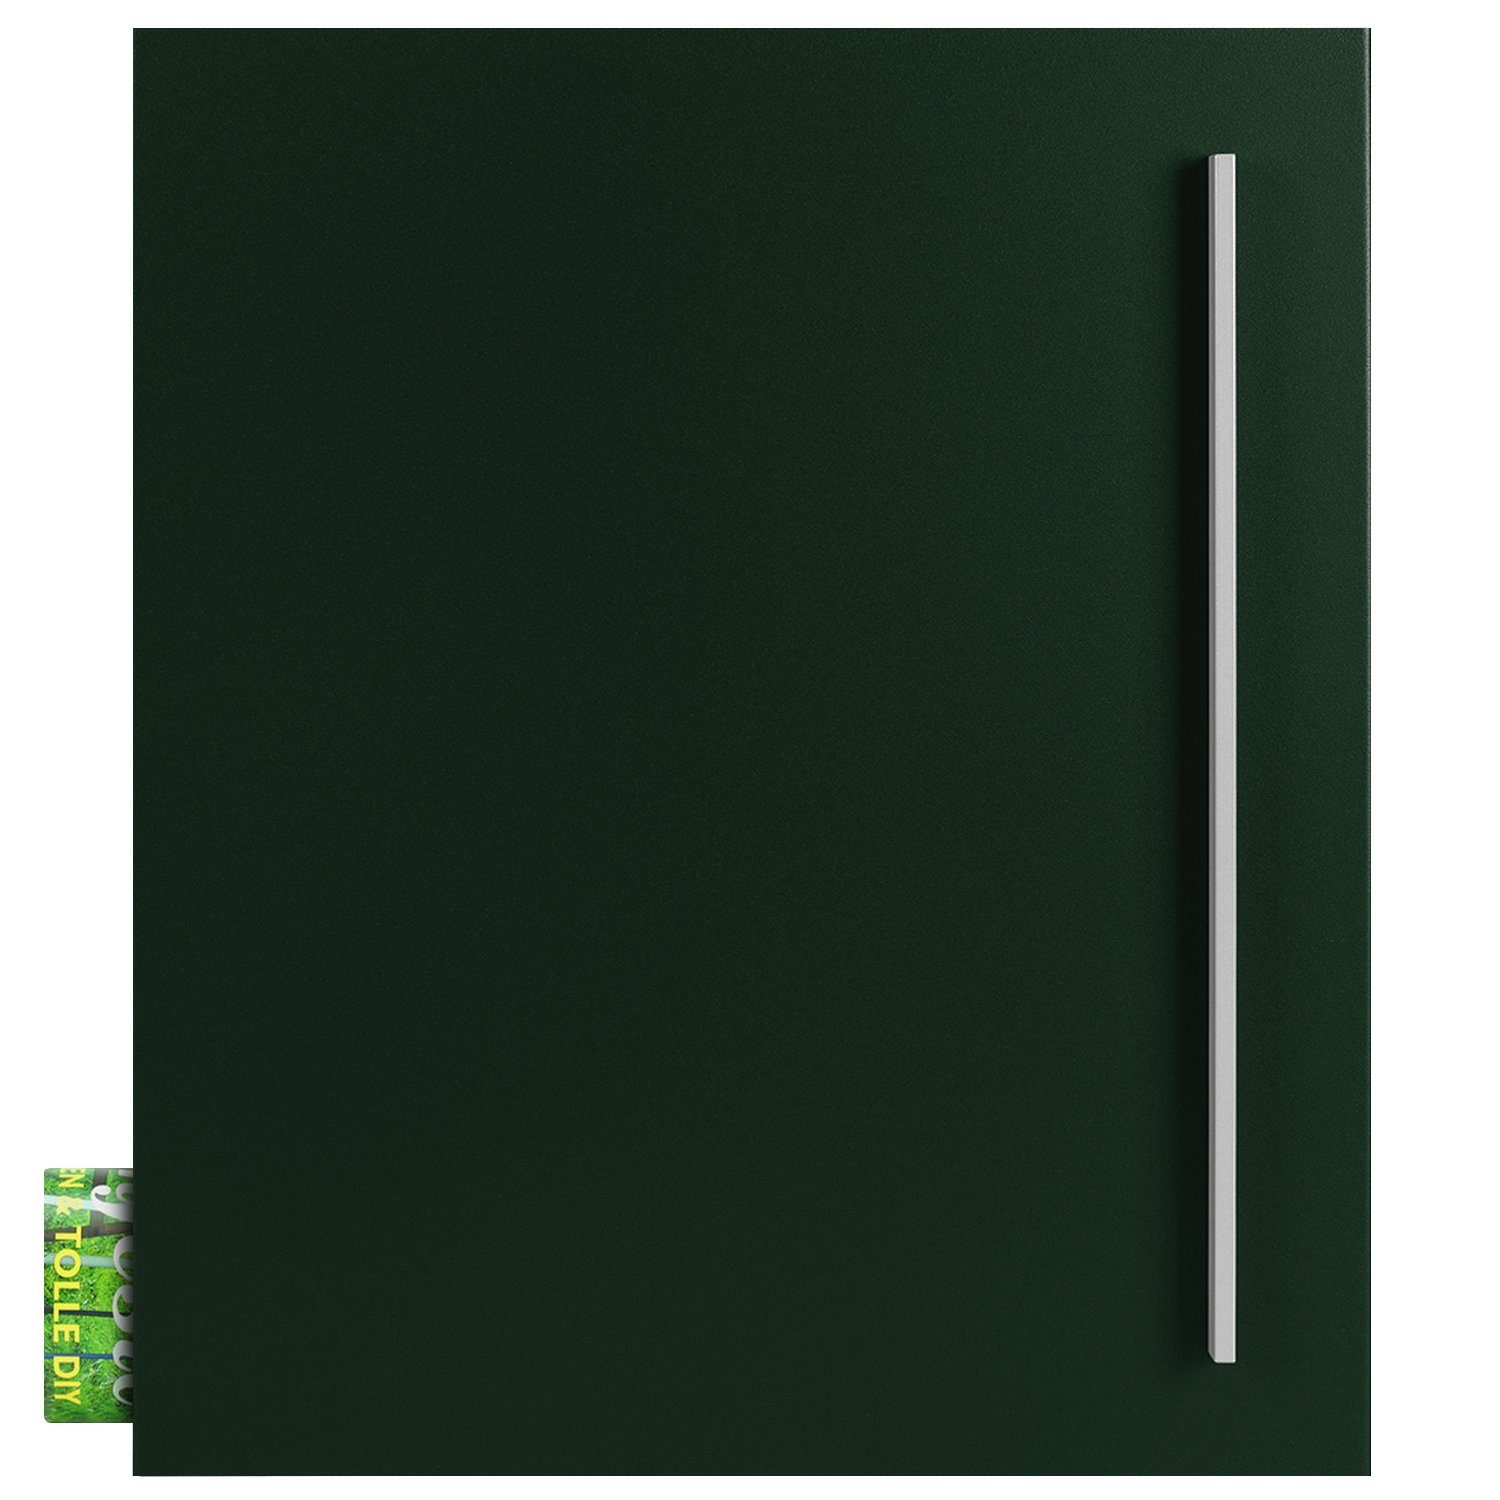 MOCAVI Briefkasten »MOCAVI Box 110 Qualitäts-Briefkasten mit Zeitungsfach  tannen-grün (RAL 6009)« online kaufen | OTTO